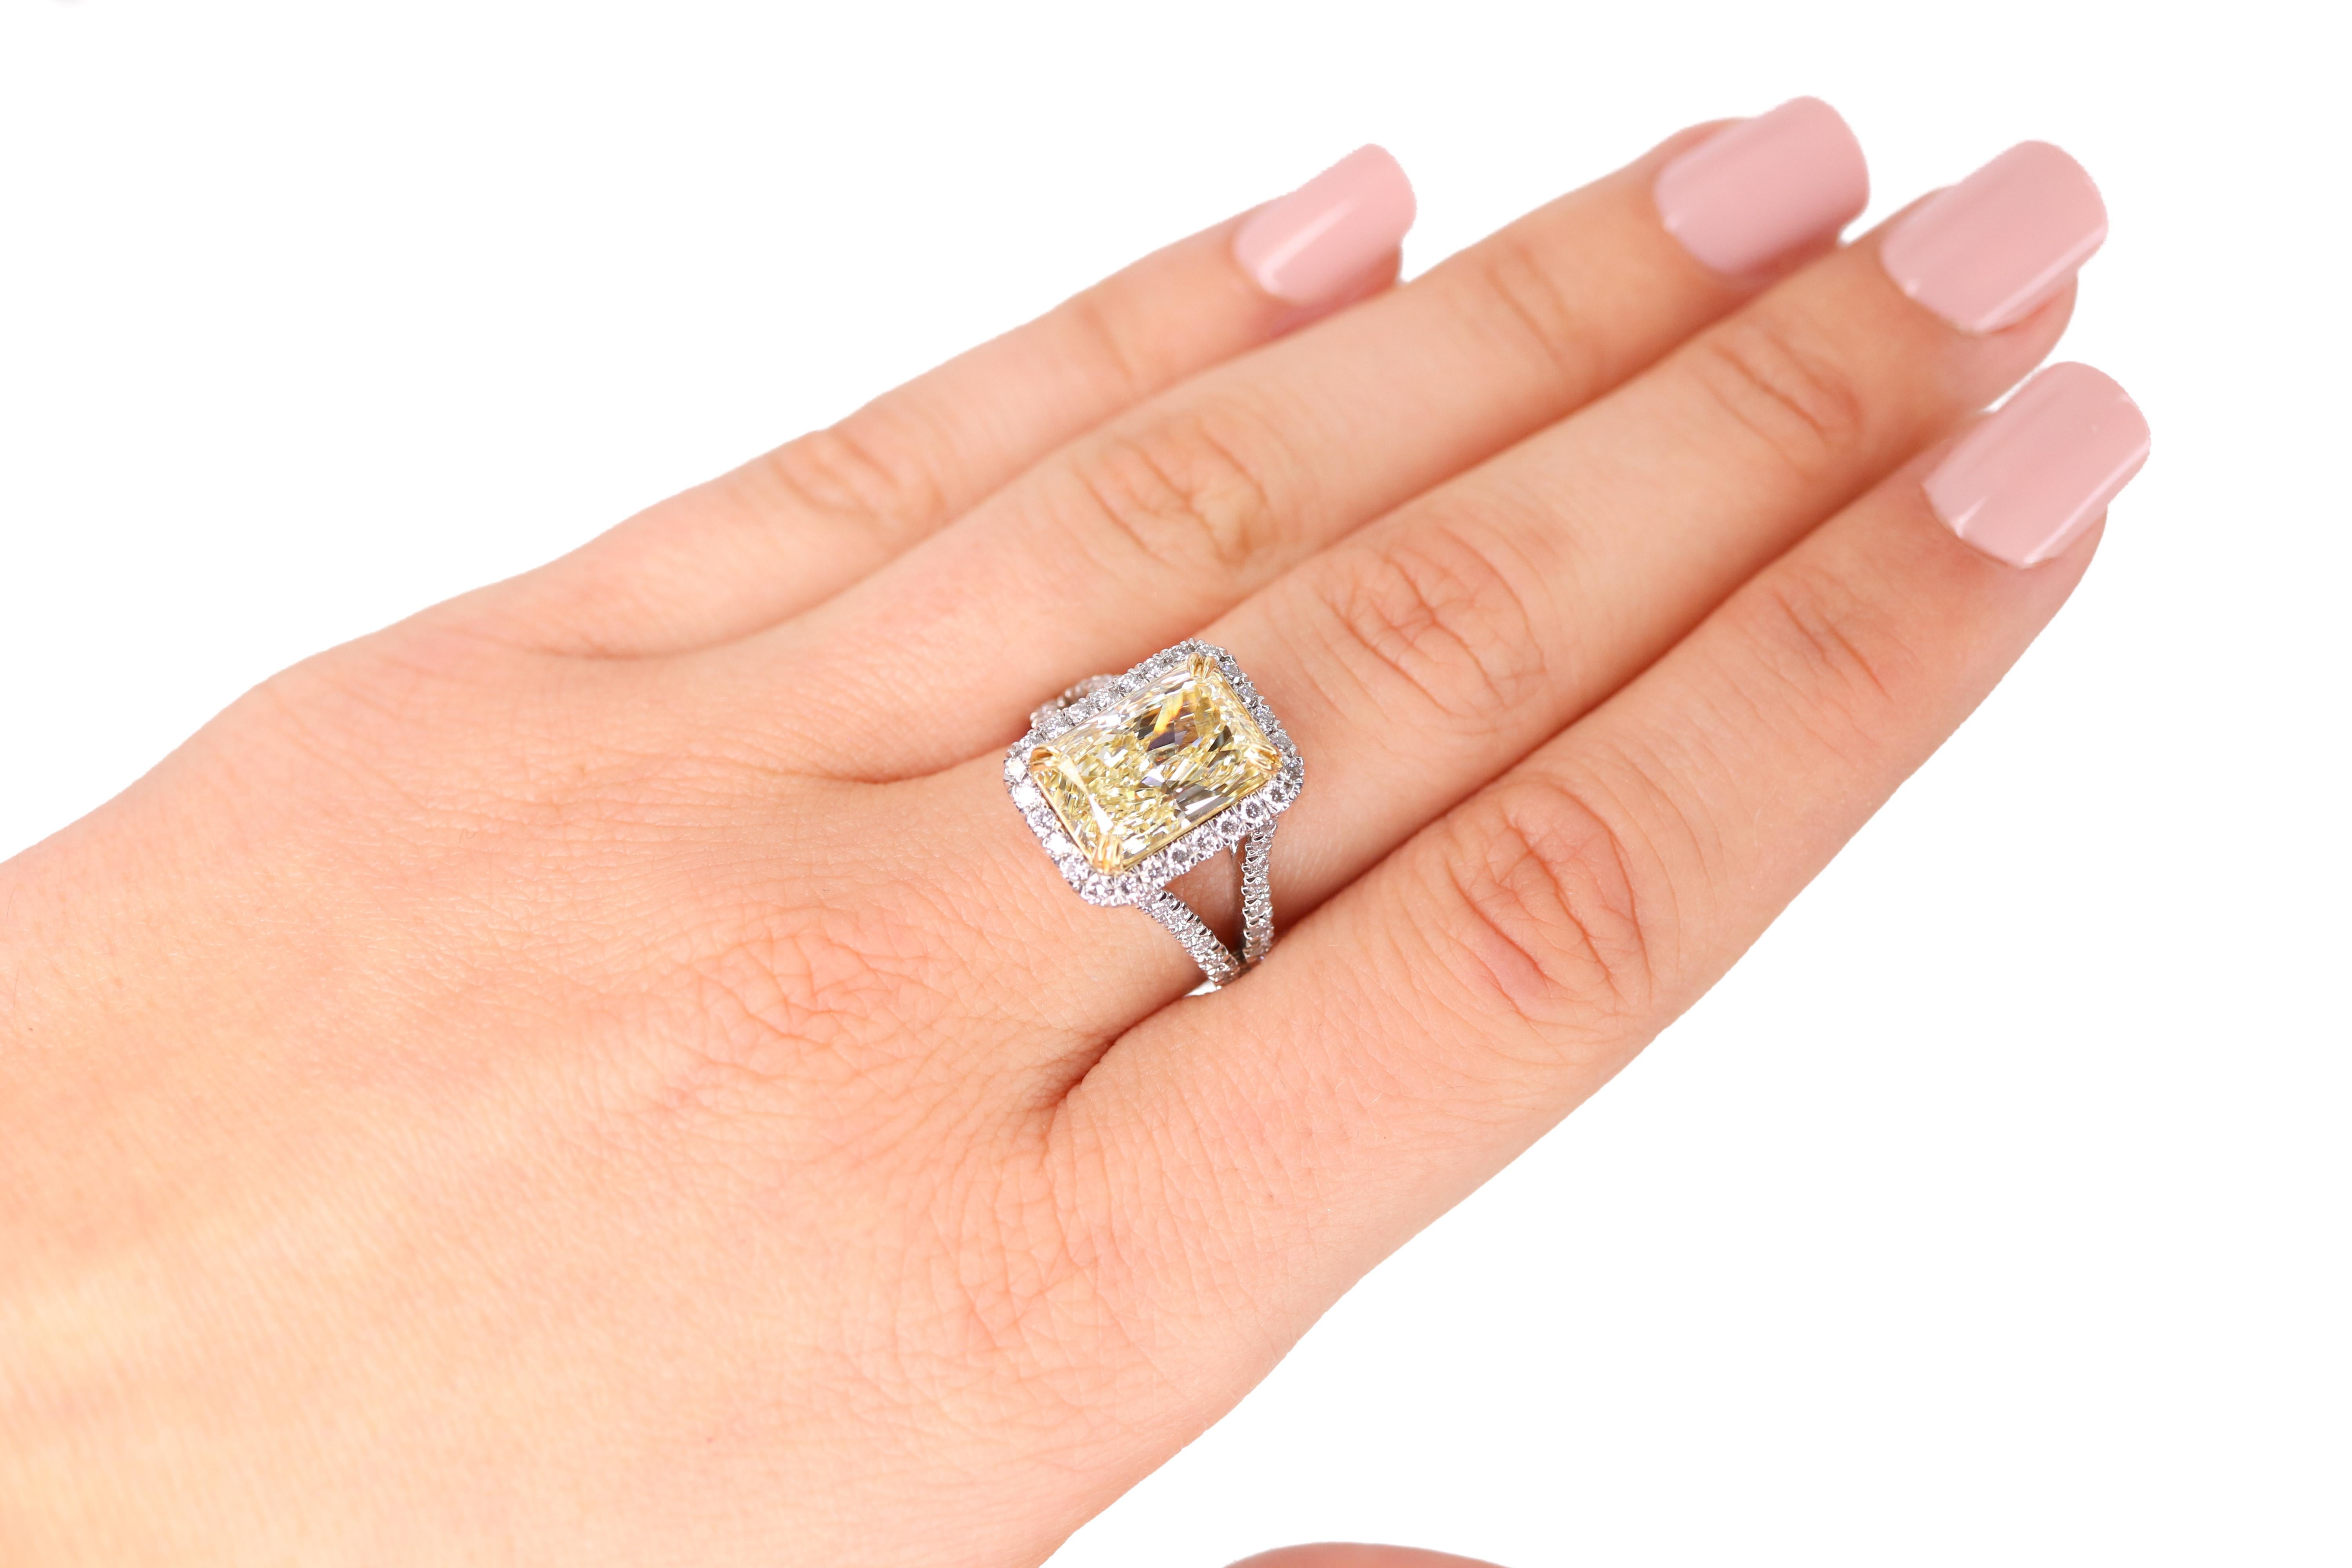 Women's EGL Certified 5.08 Carat Radiant Fancy Light Yellow Diamond Ring